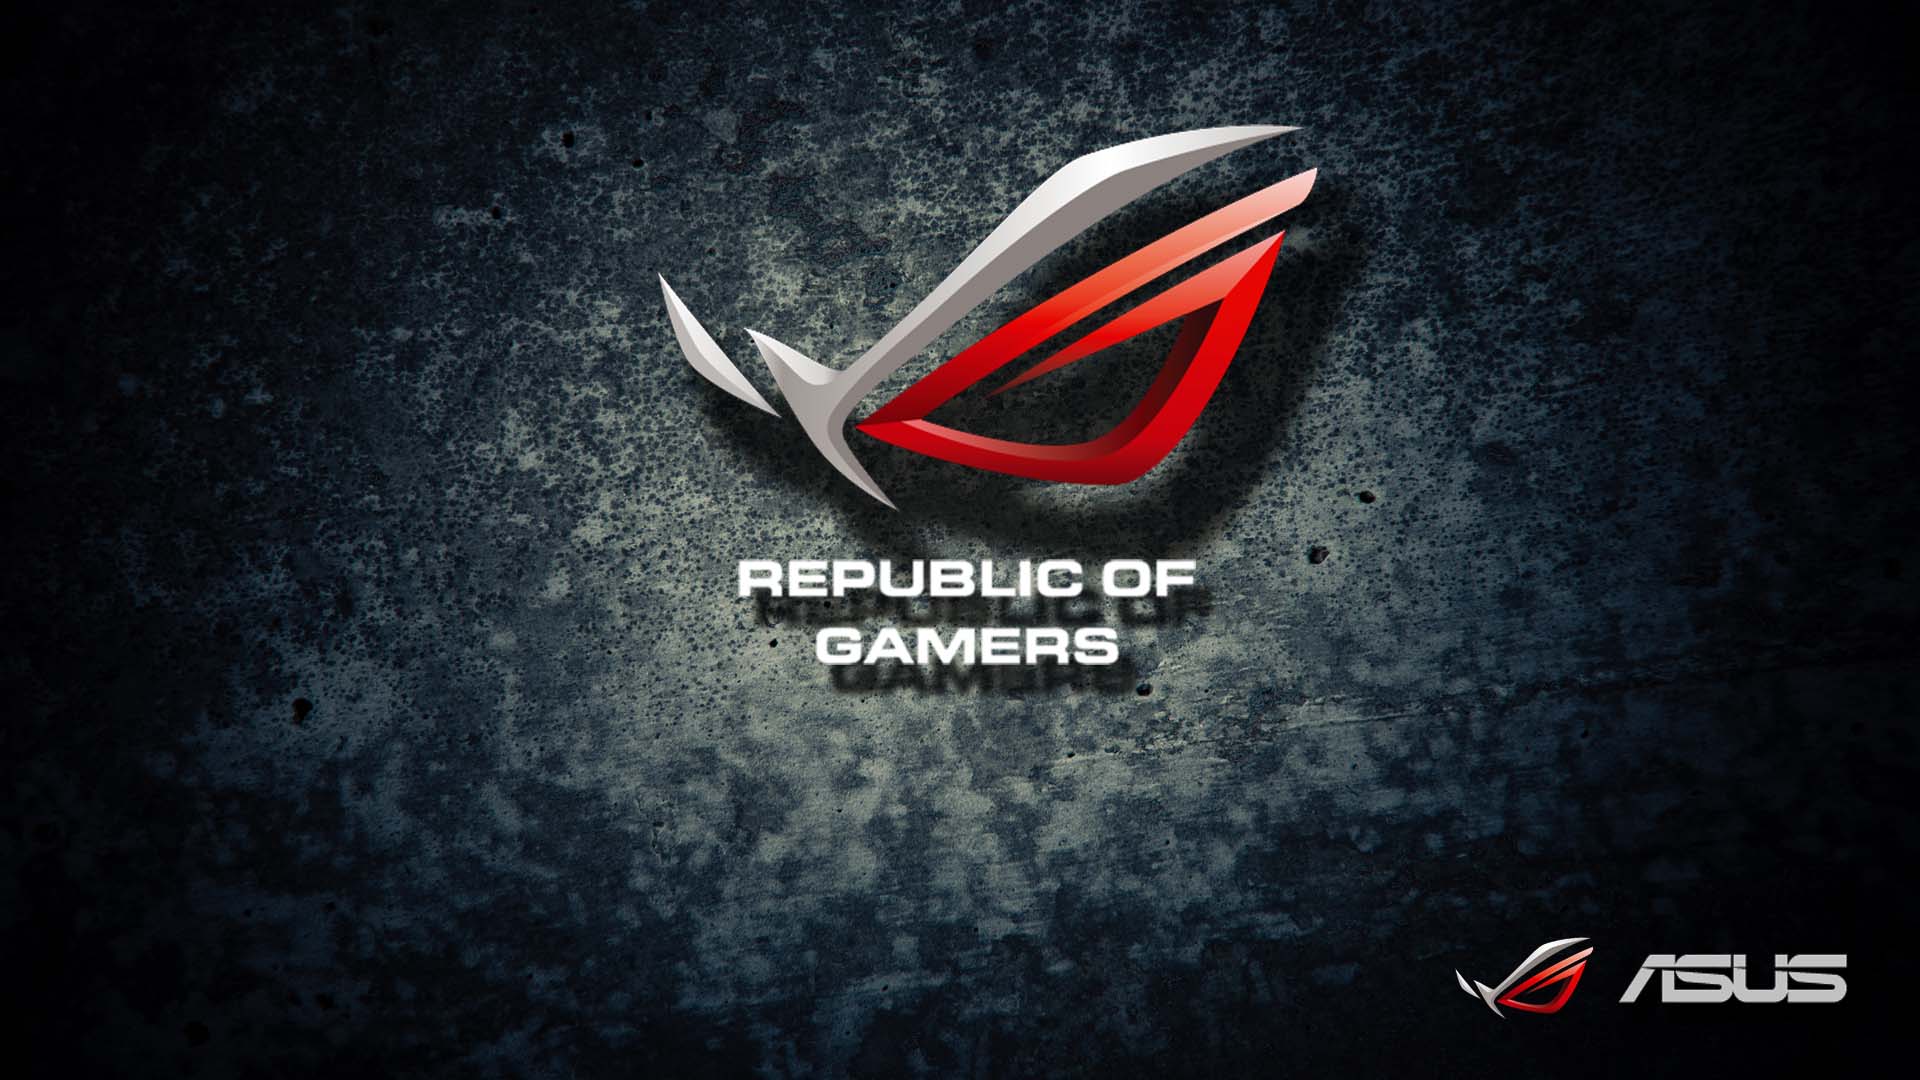 Asus Republic Of Gamers Wallpaper 1080p Danasrfh Top